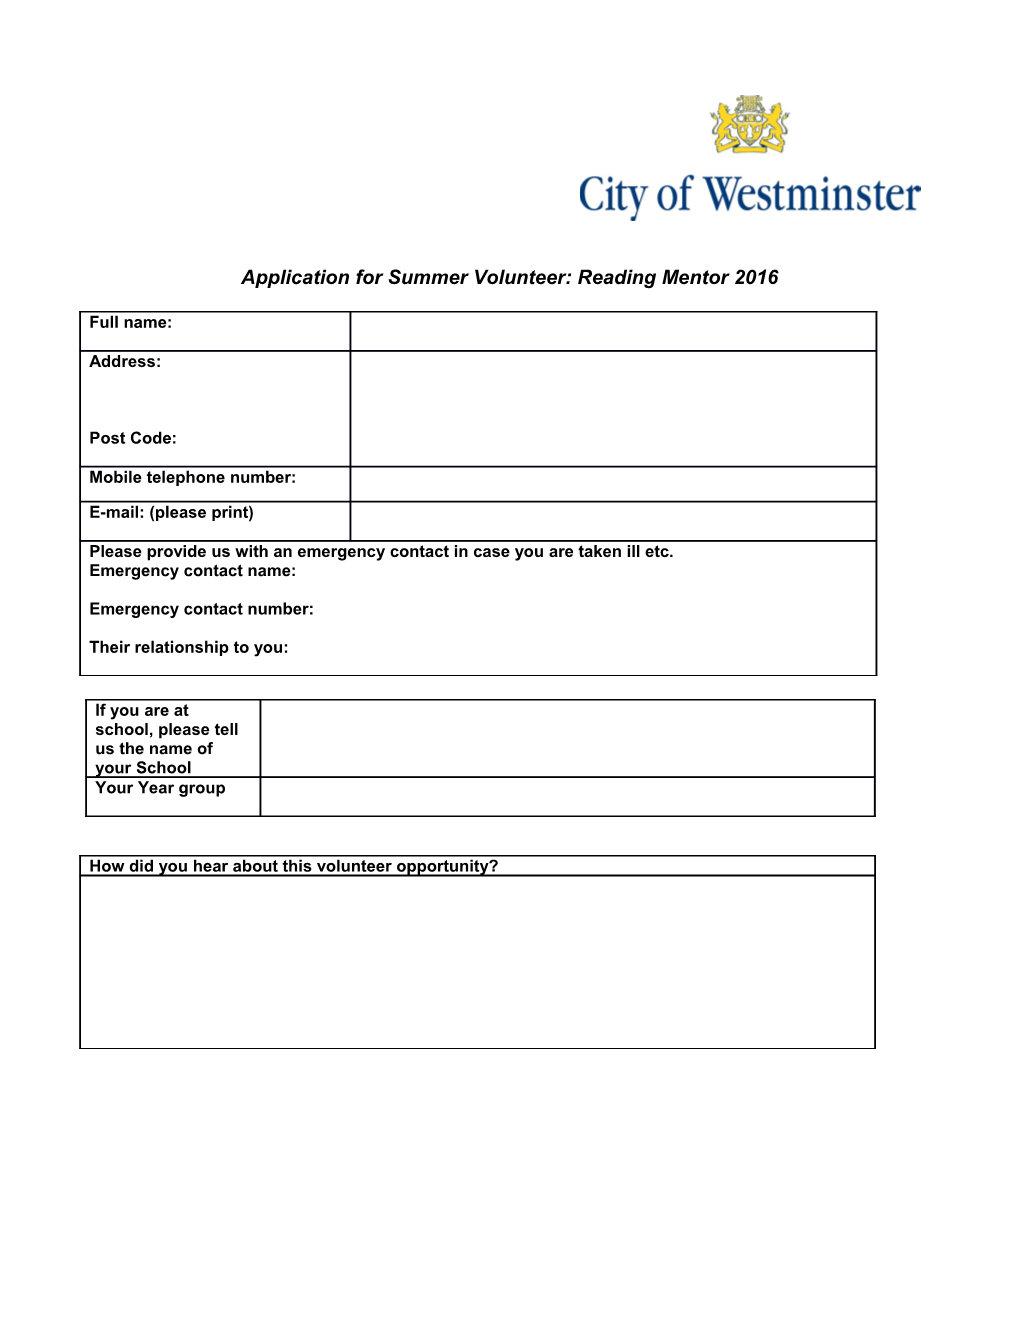 Application for Summer Volunteer: Reading Mentor 2016